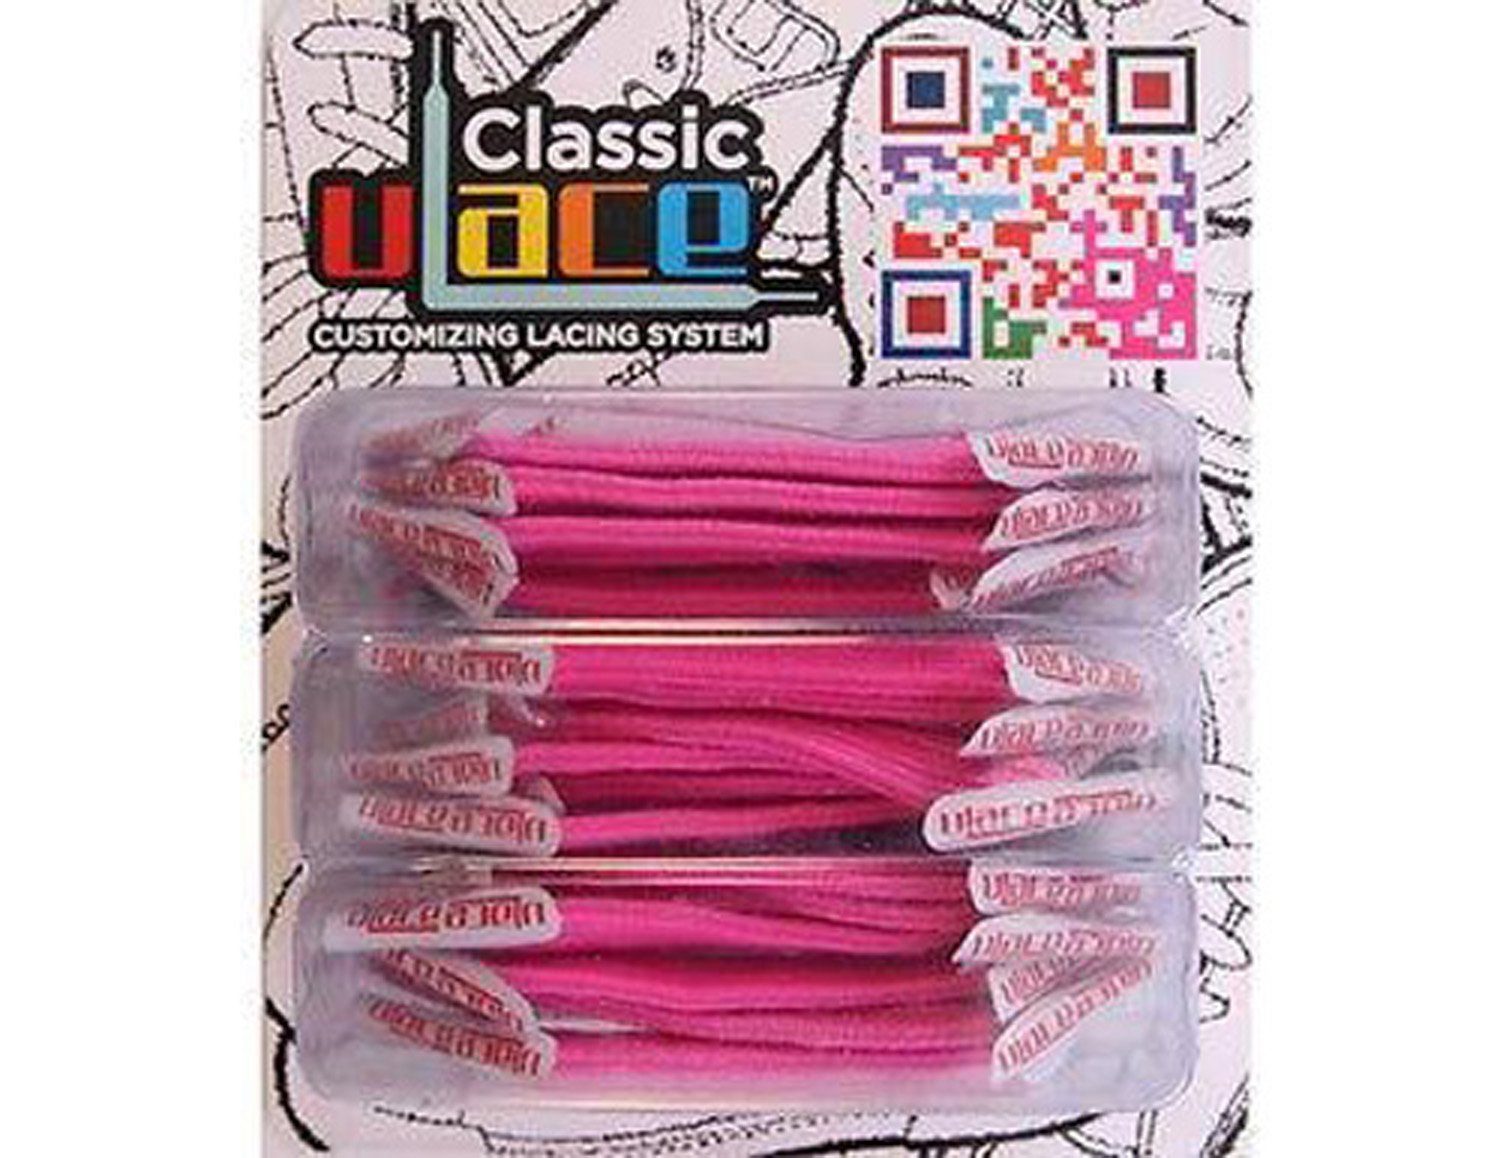 Hot Schnürsenkel Classic - Stück elastische Wiederhaken 18 U-Laces mit Pink Schnürsenkel